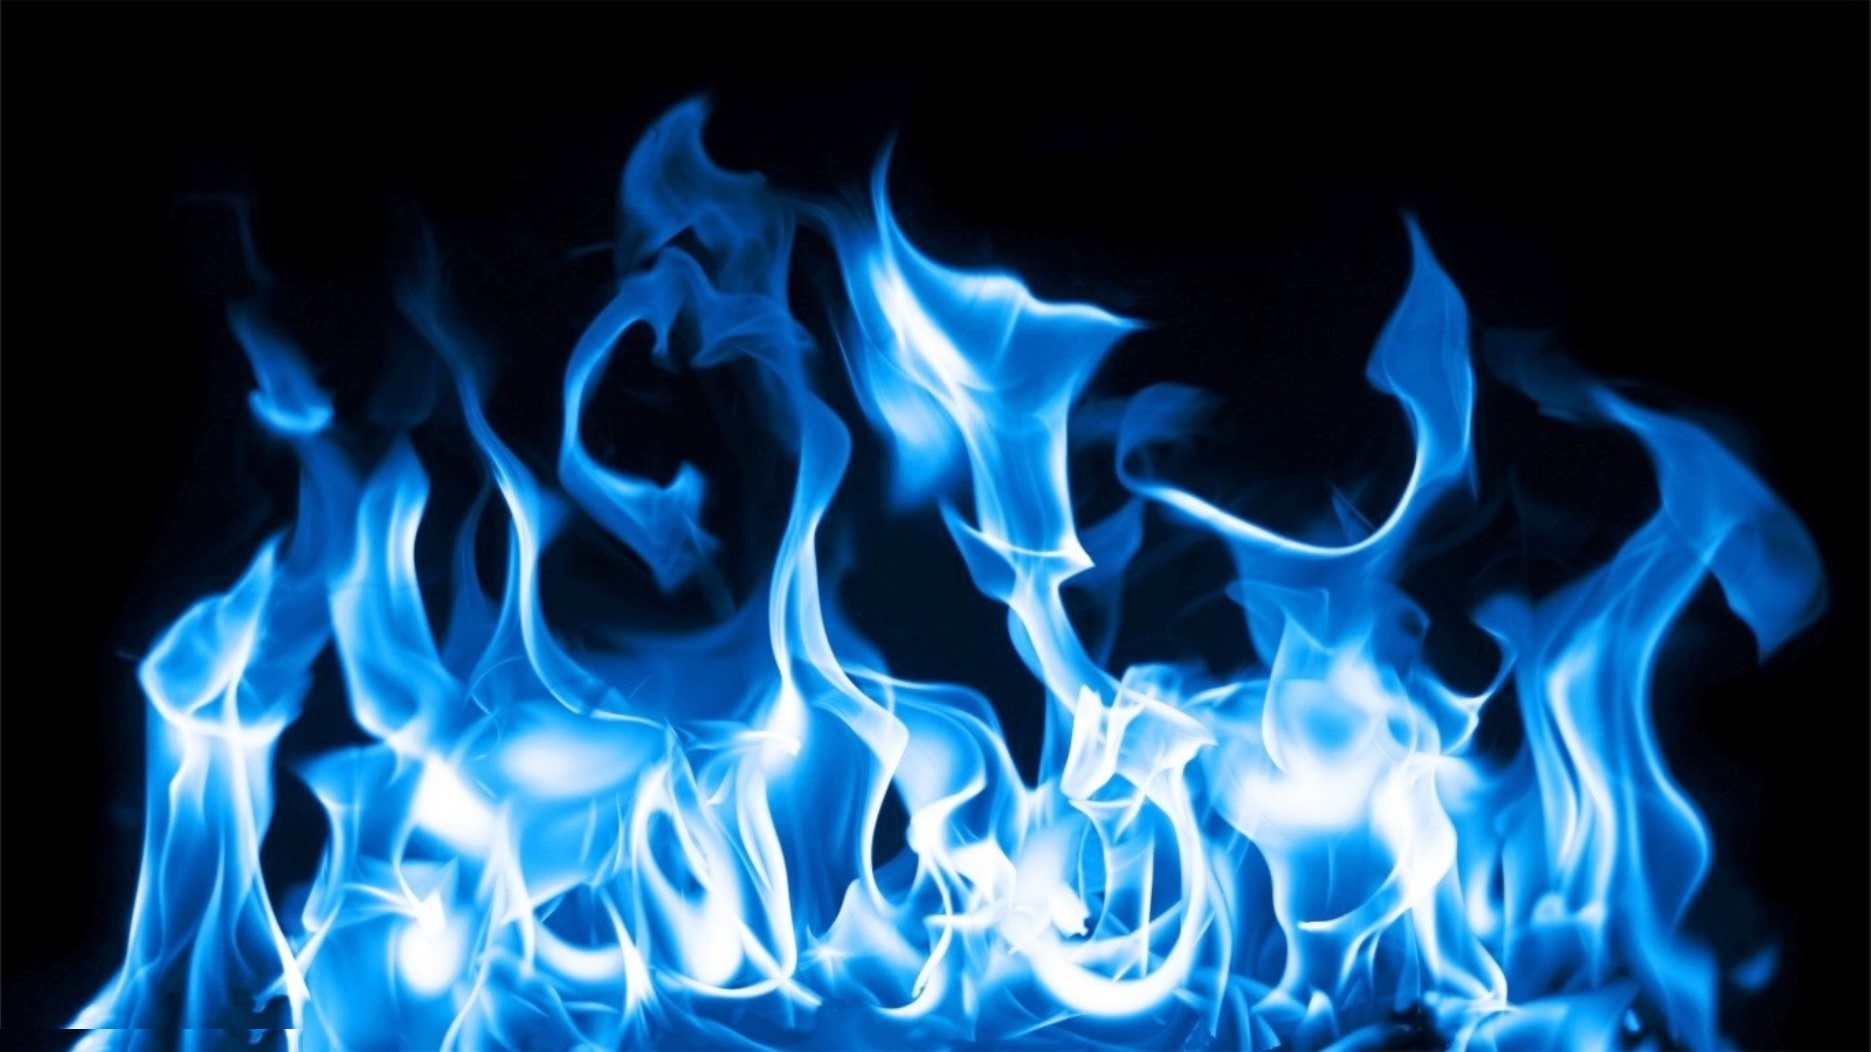 Các hình nền lửa màu xanh đáng yêu sẽ làm bạn ngất ngây! Từ động tác cháy lớn đến các dải lửa màu xanh hơn, những hình ảnh này sẽ đem lại cho bạn sự phấn khích và thú vị. Nếu bạn thích màu xanh và niềm đam mê với lửa, đây chắc chắn là những hình nền hoàn hảo cho bạn.